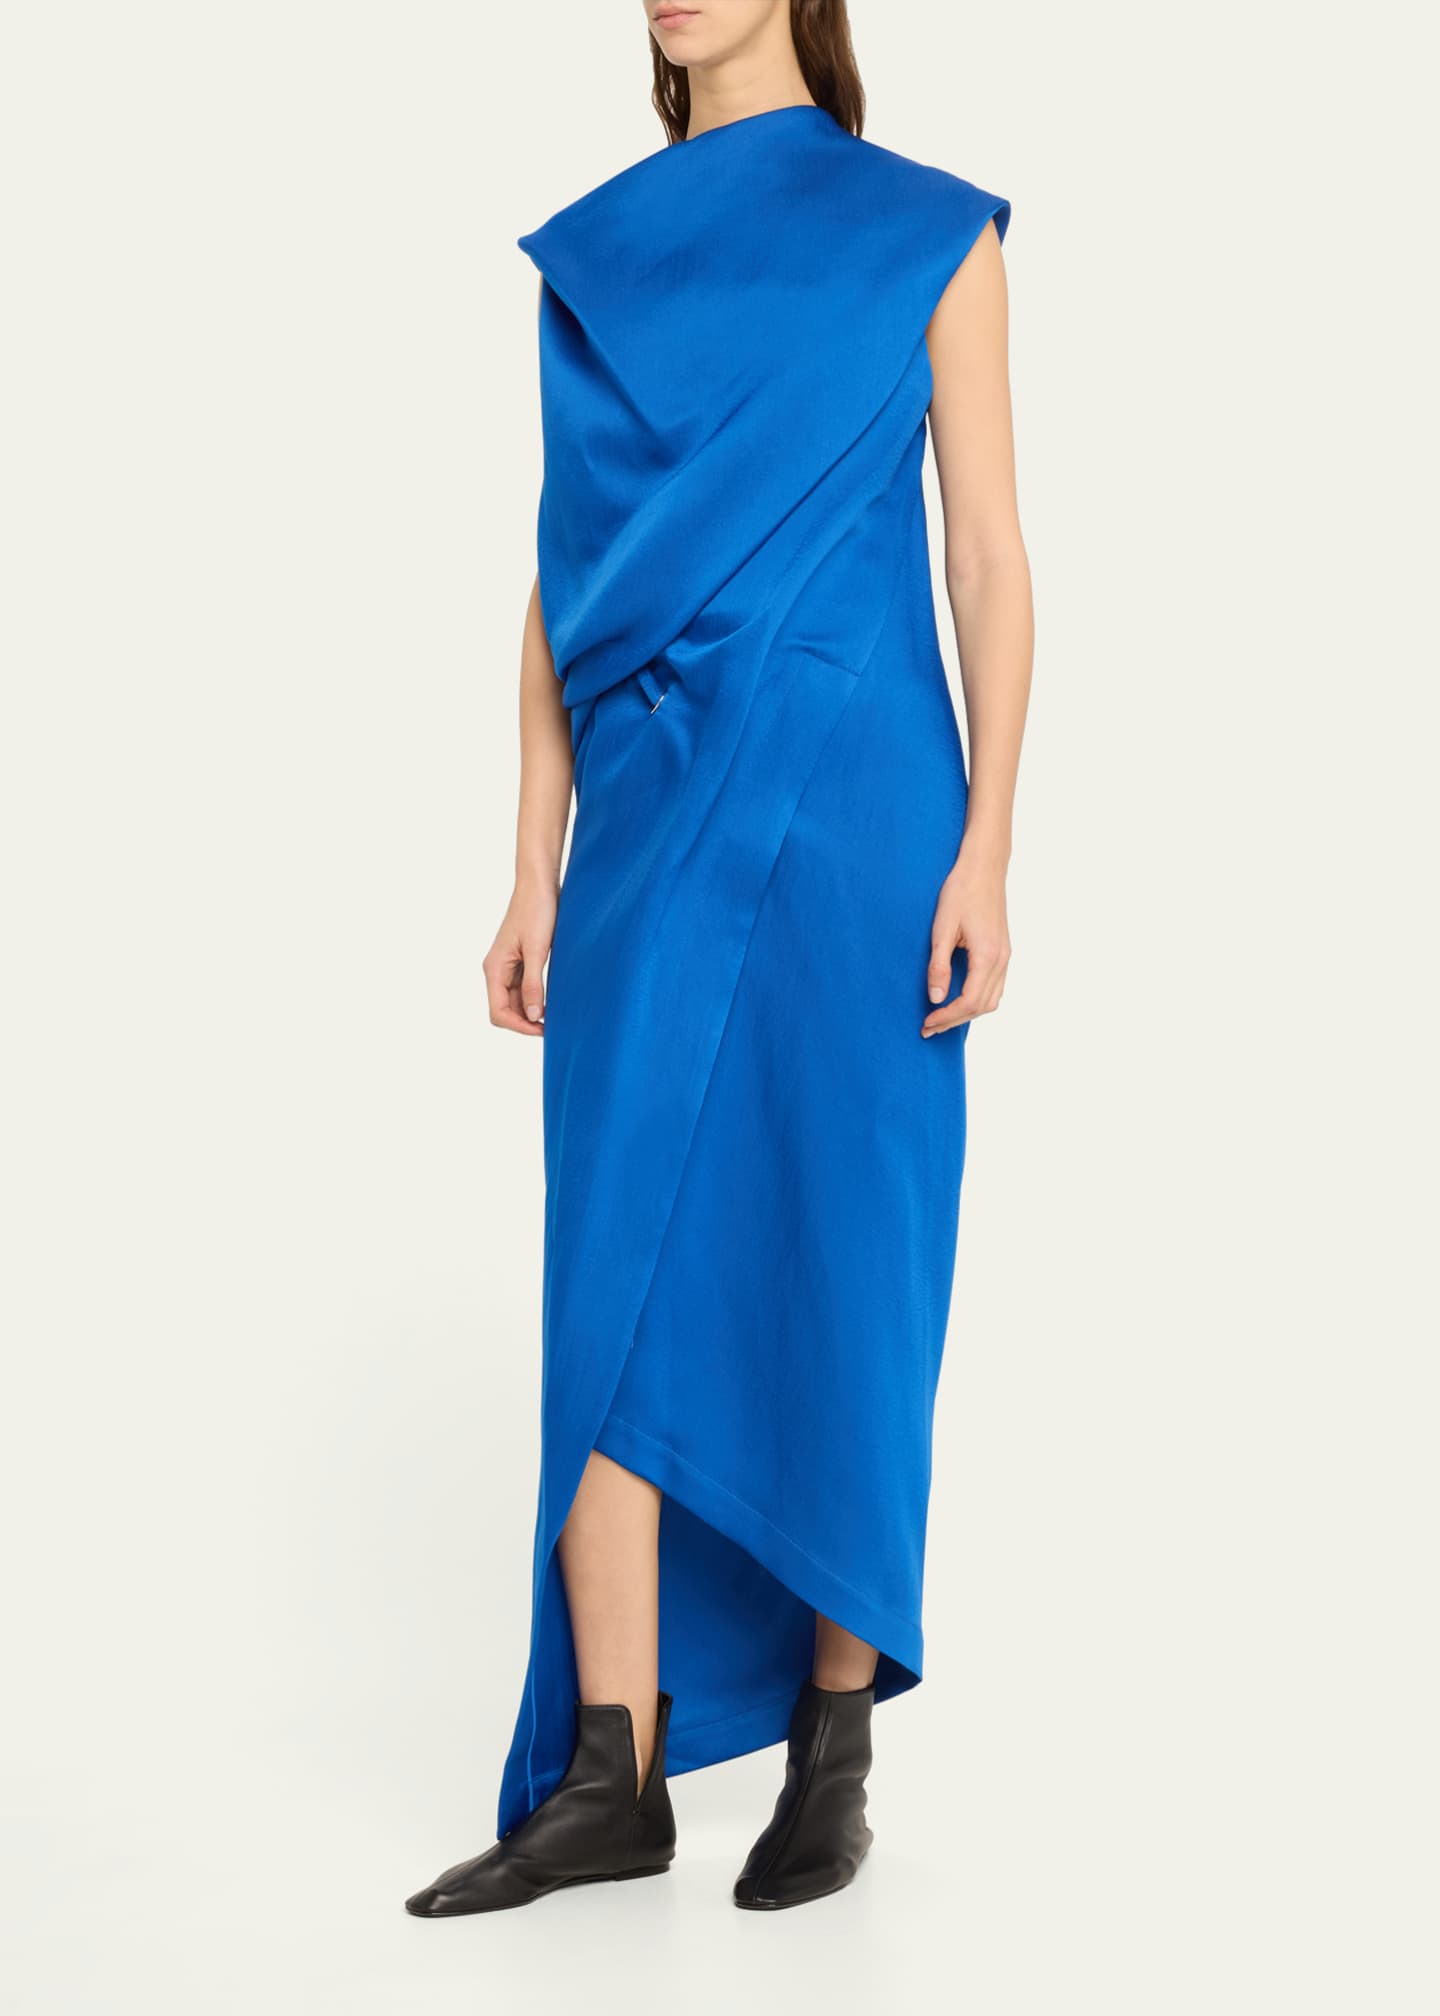 Issey Miyake Enveloping Asymmetric Draped Dress - Bergdorf Goodman